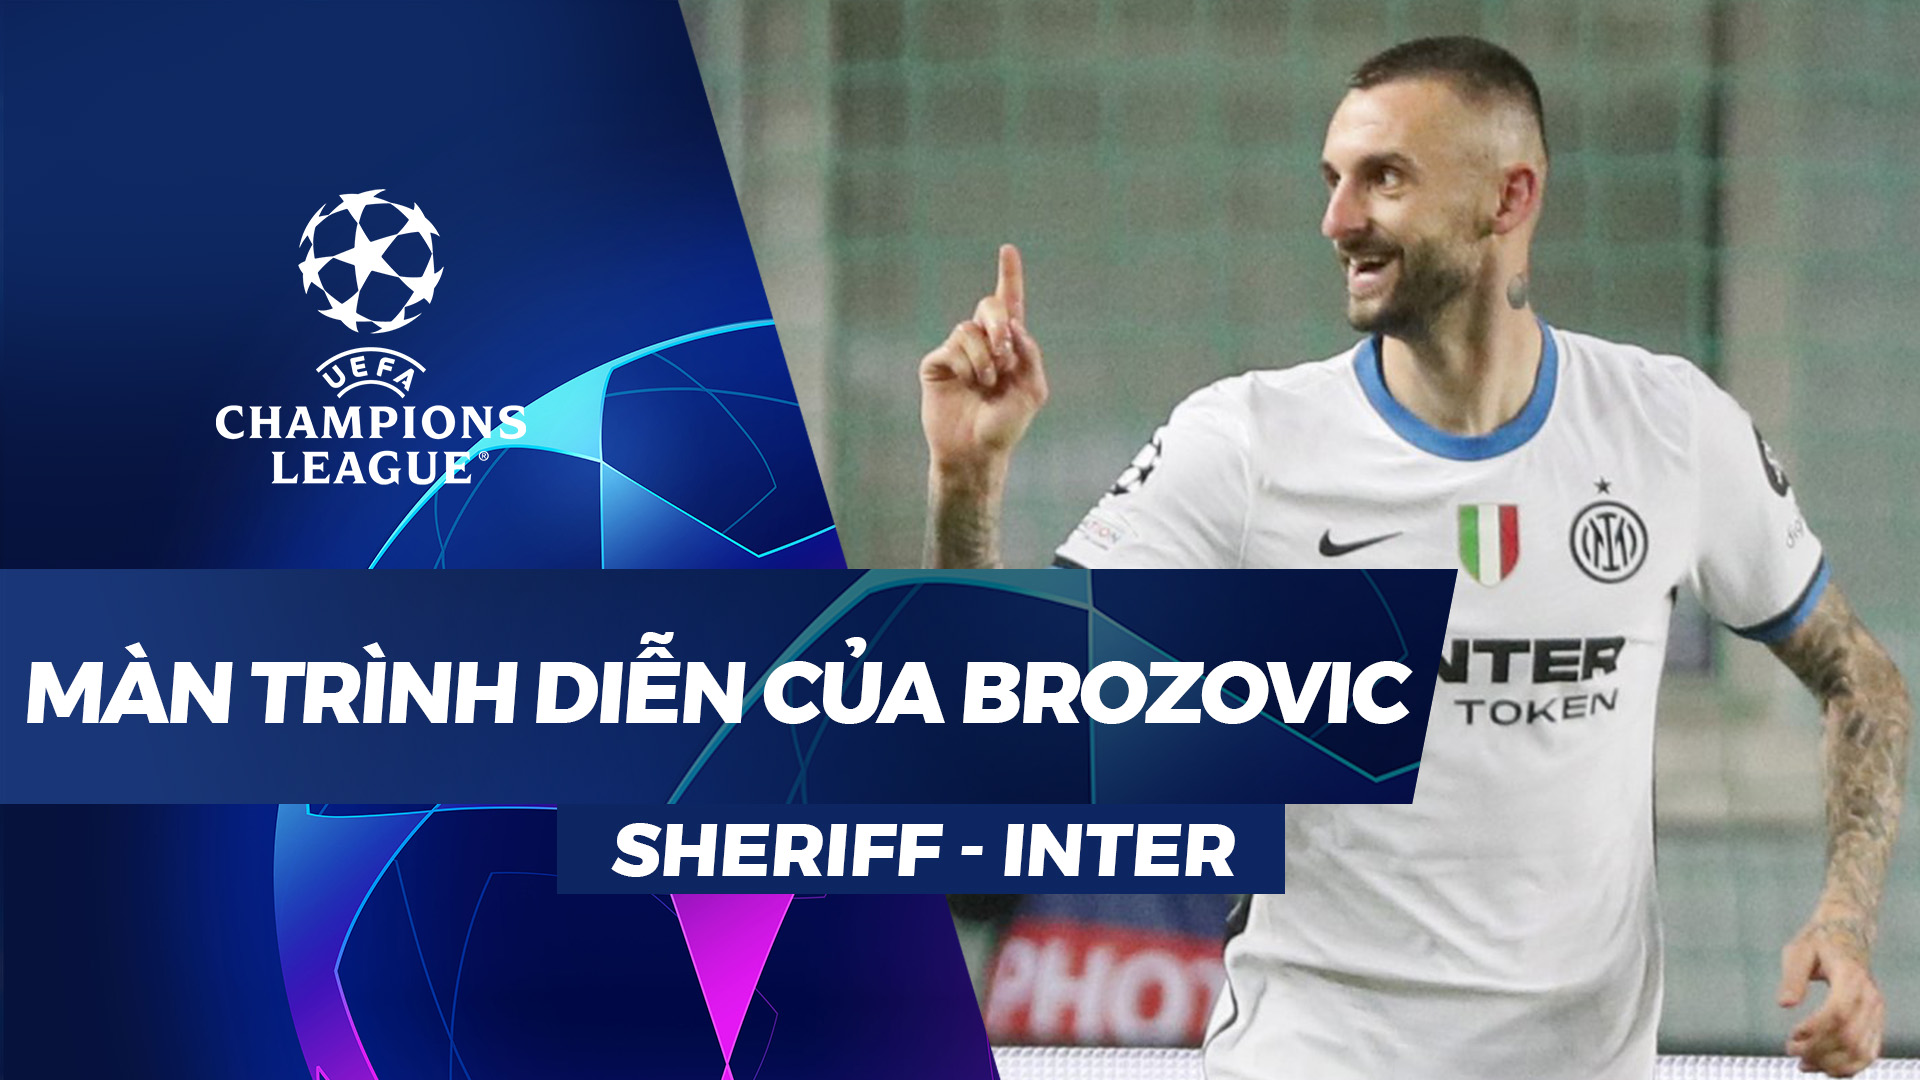 Màn trình diễn của Brozovic trước Sheriff - UEFA Champions League